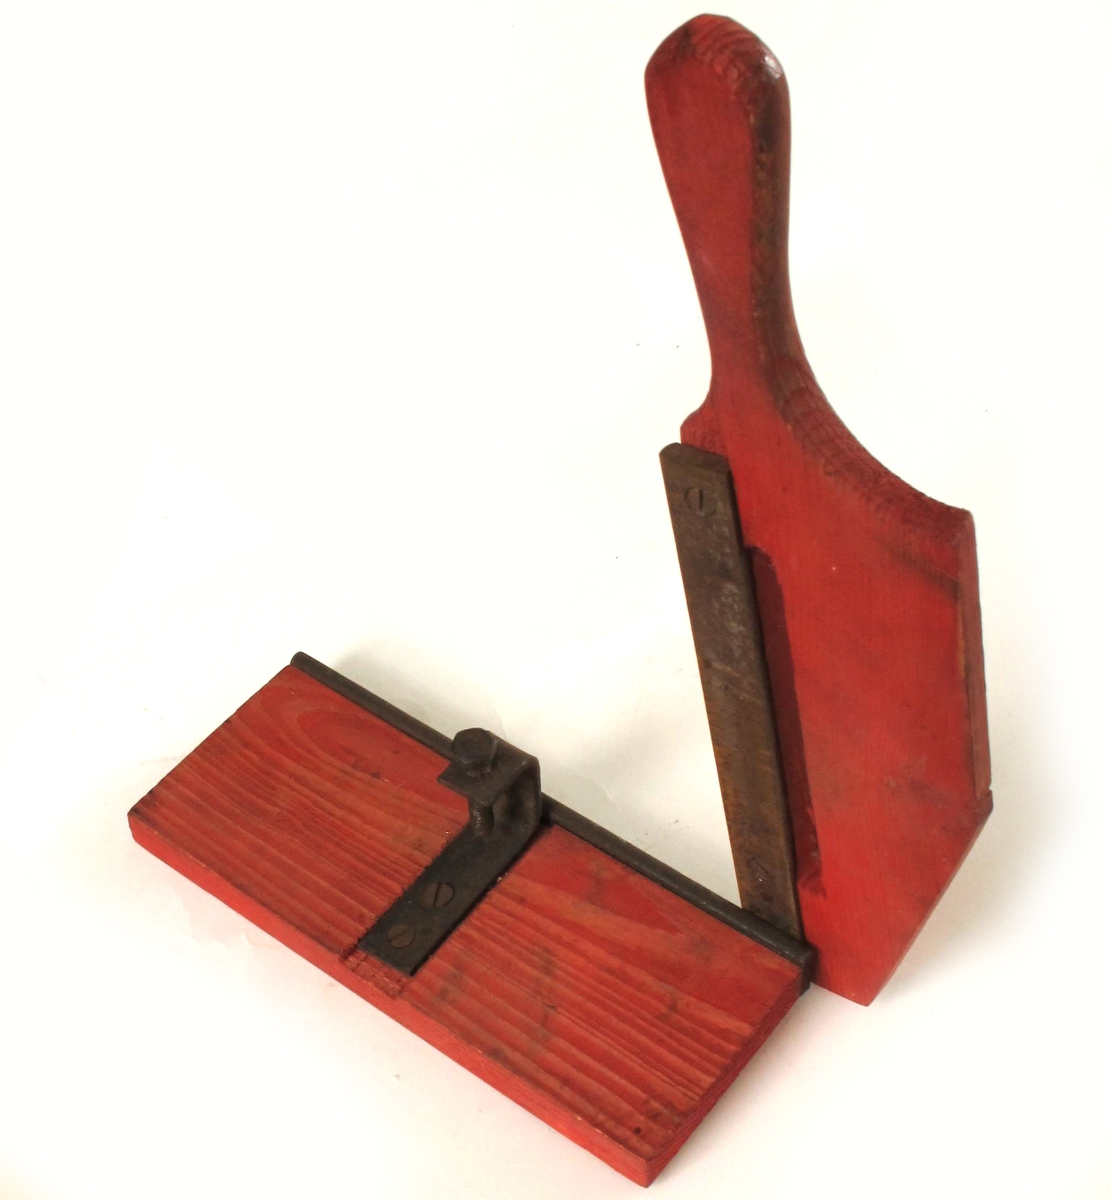 Skjæremaskin for tobakk,  fra krigen 1940-45.   
Furu,  rødmalt,   jernkniv.   
Kniv uten skarp egg. Form som en papirskjærer,  med håndtak/kniv langs den ene langside. Stilleskrue pm.  Tilstand: jernet rustent. Virker lite brukt.